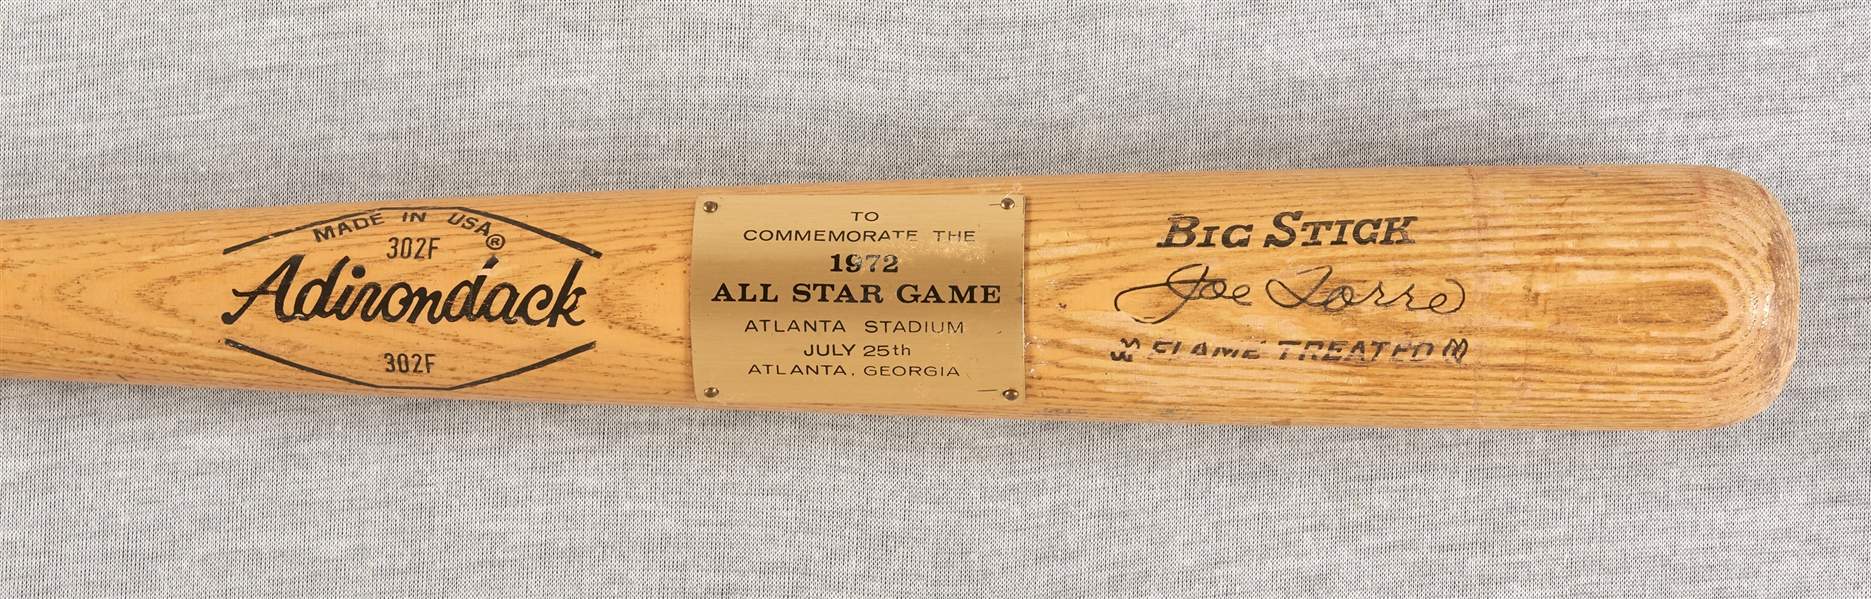 1972 Joe Torre All-Star Game Adirondack Bat